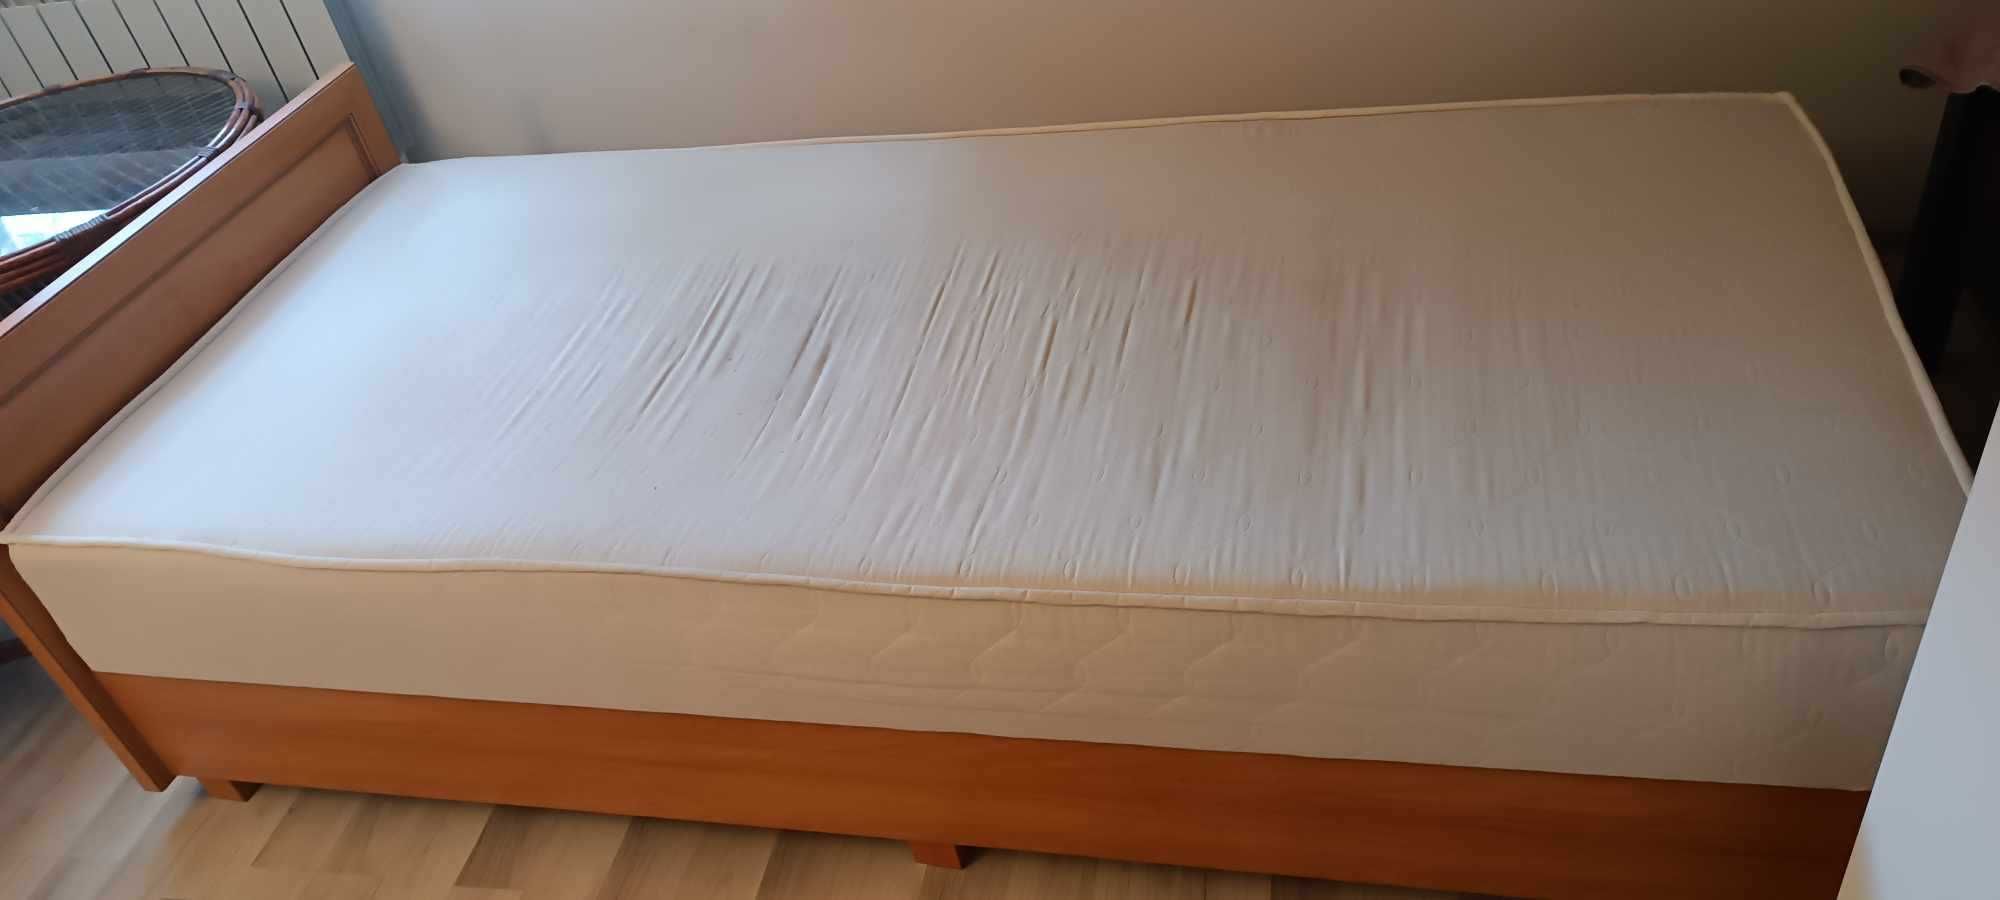 Łóżko z materacem 210x92cm